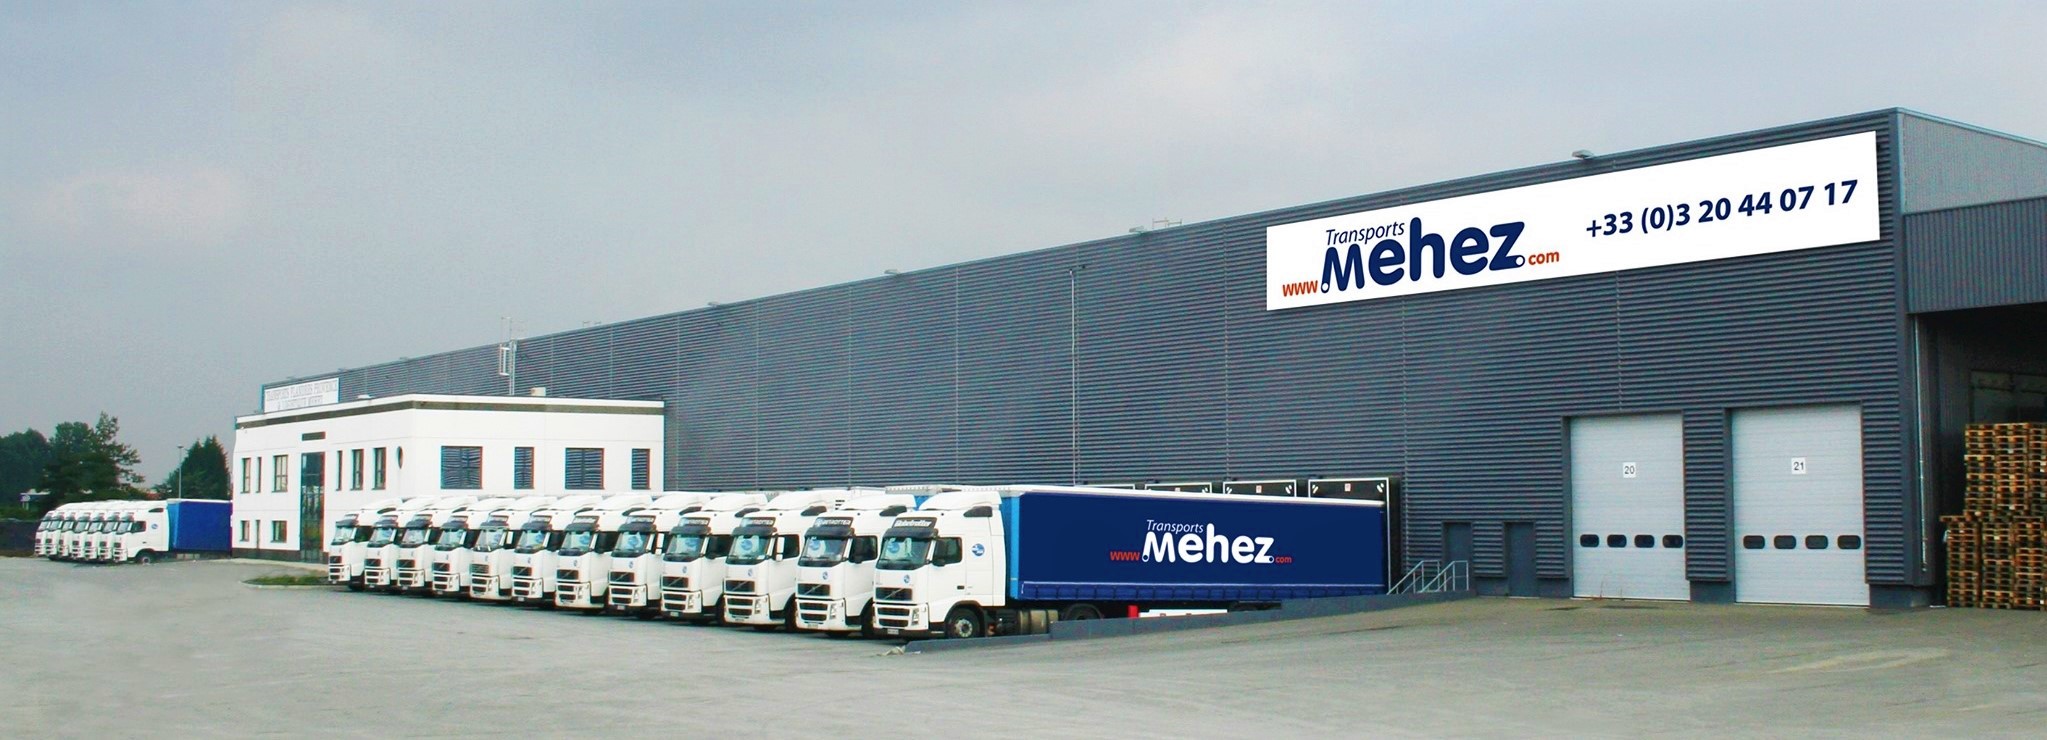 Transports Mehez